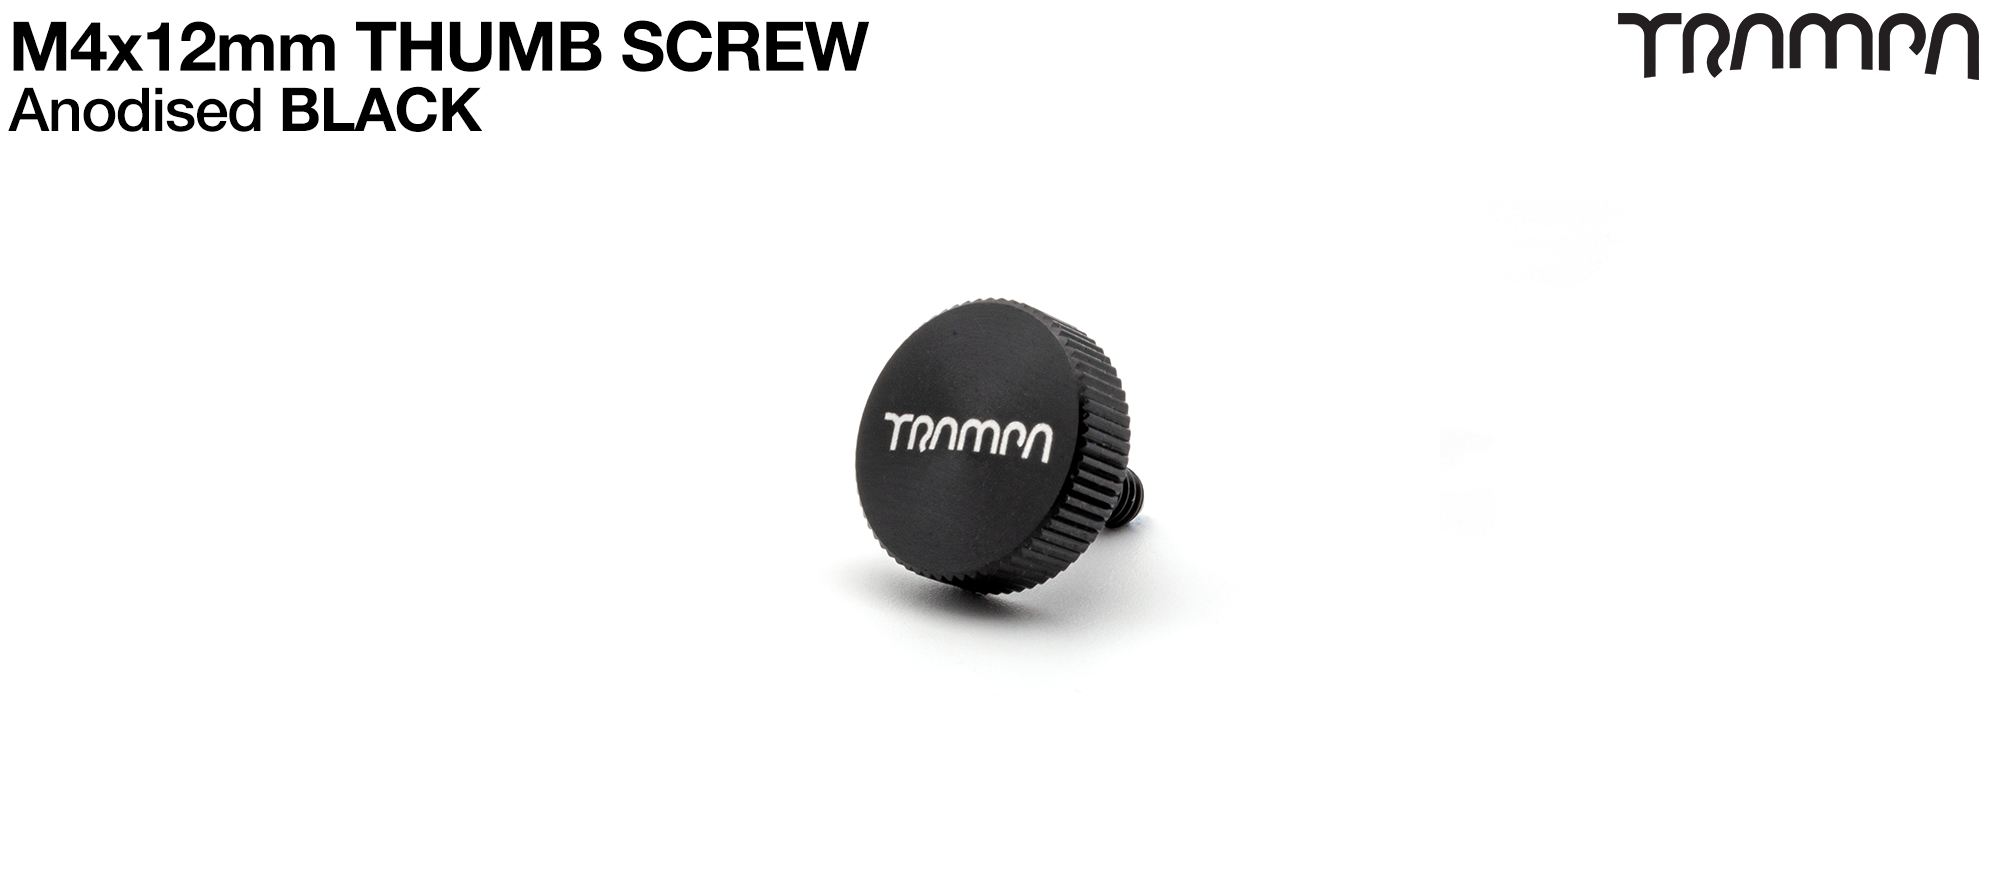 Thumb Screw - BLACK 